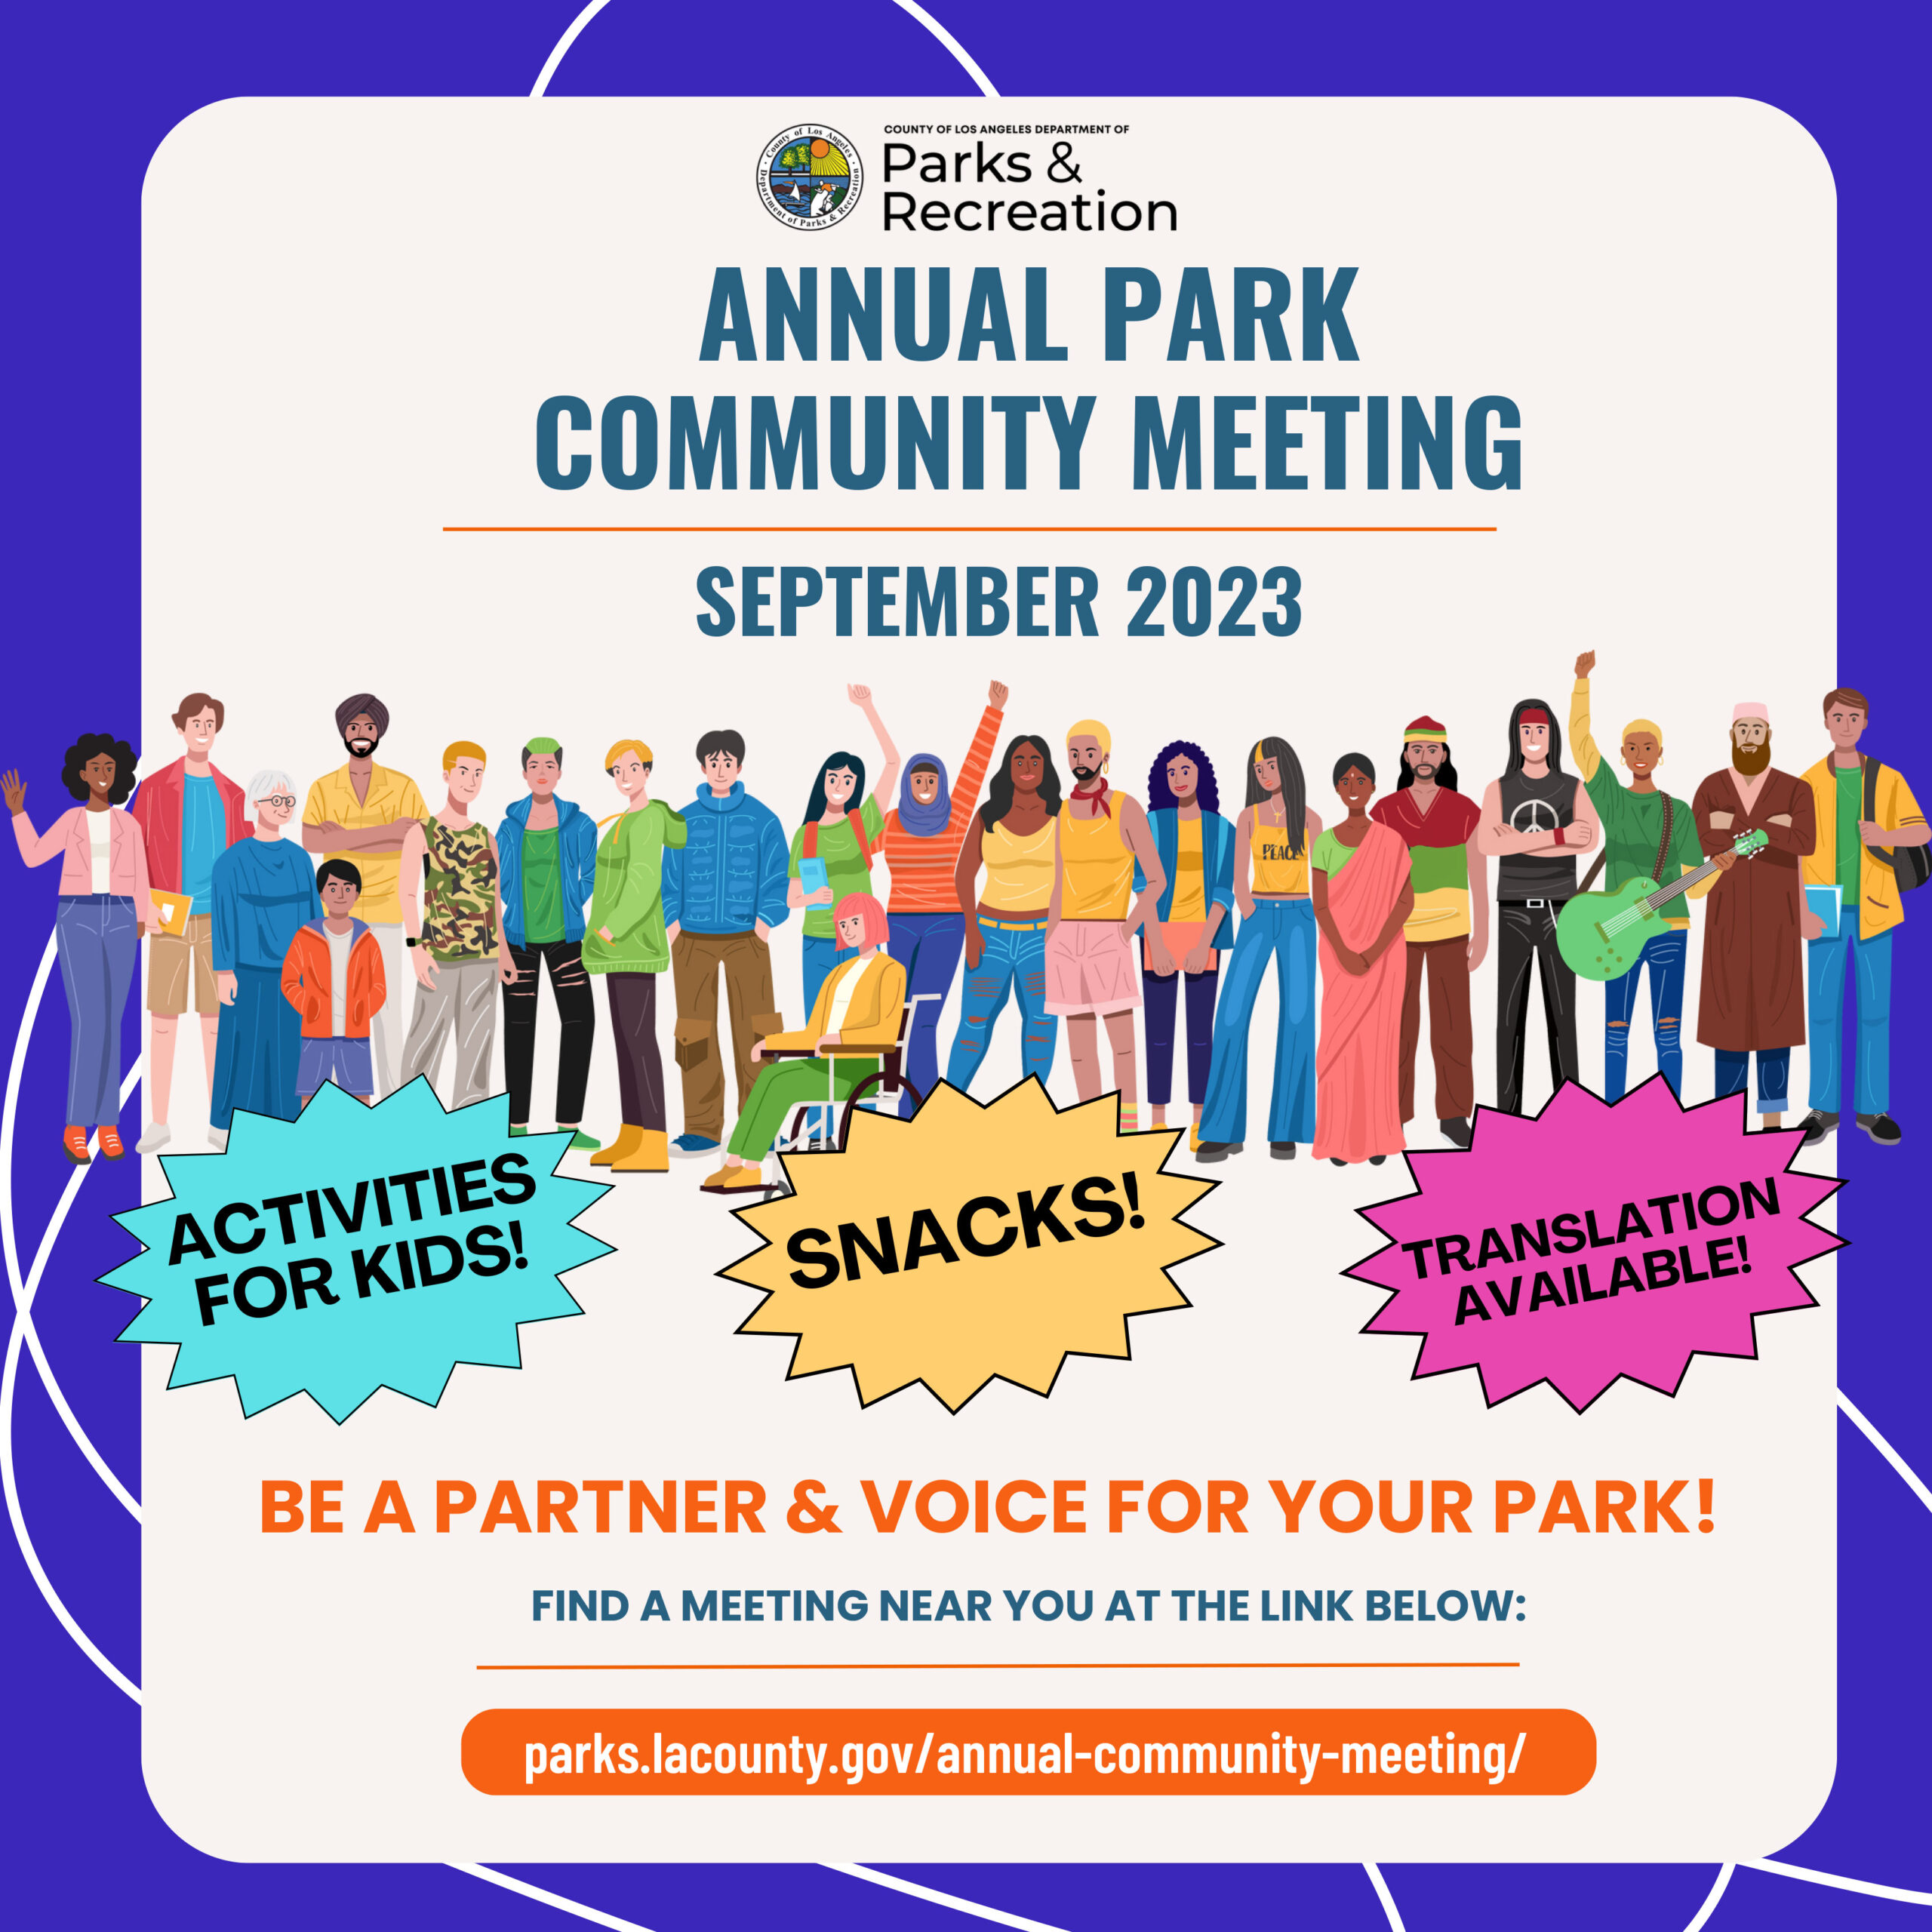 Annual Park Community Meeting for September 2023